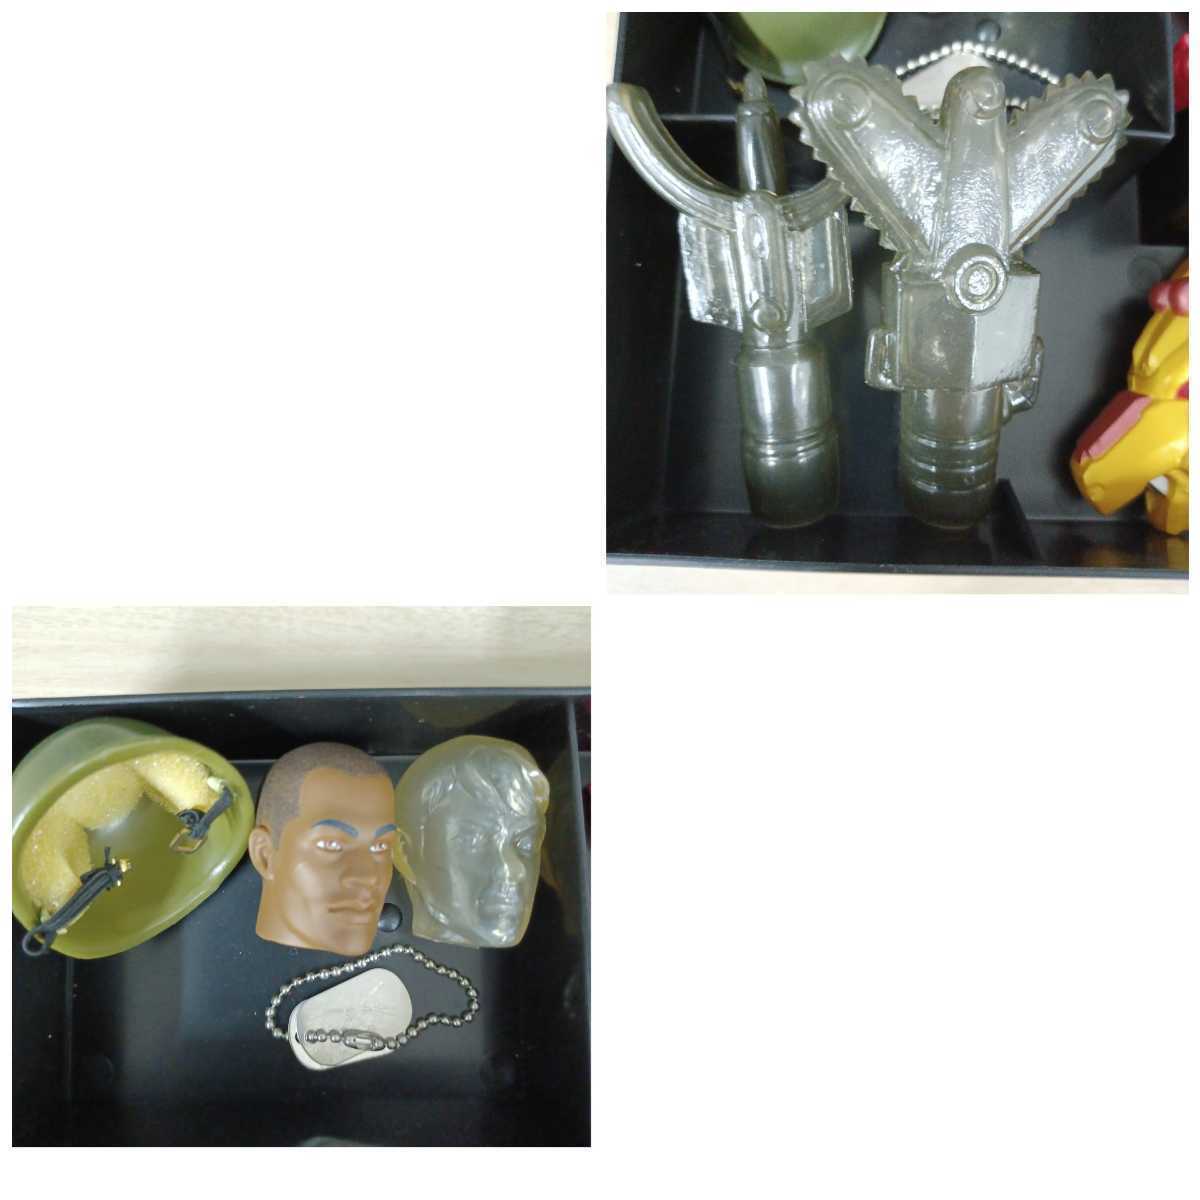  камень ) текущее состояние доставка G.I joe G.I Joe fi механизм sofvi Ultraman cyborg милитари 220616 G1-1